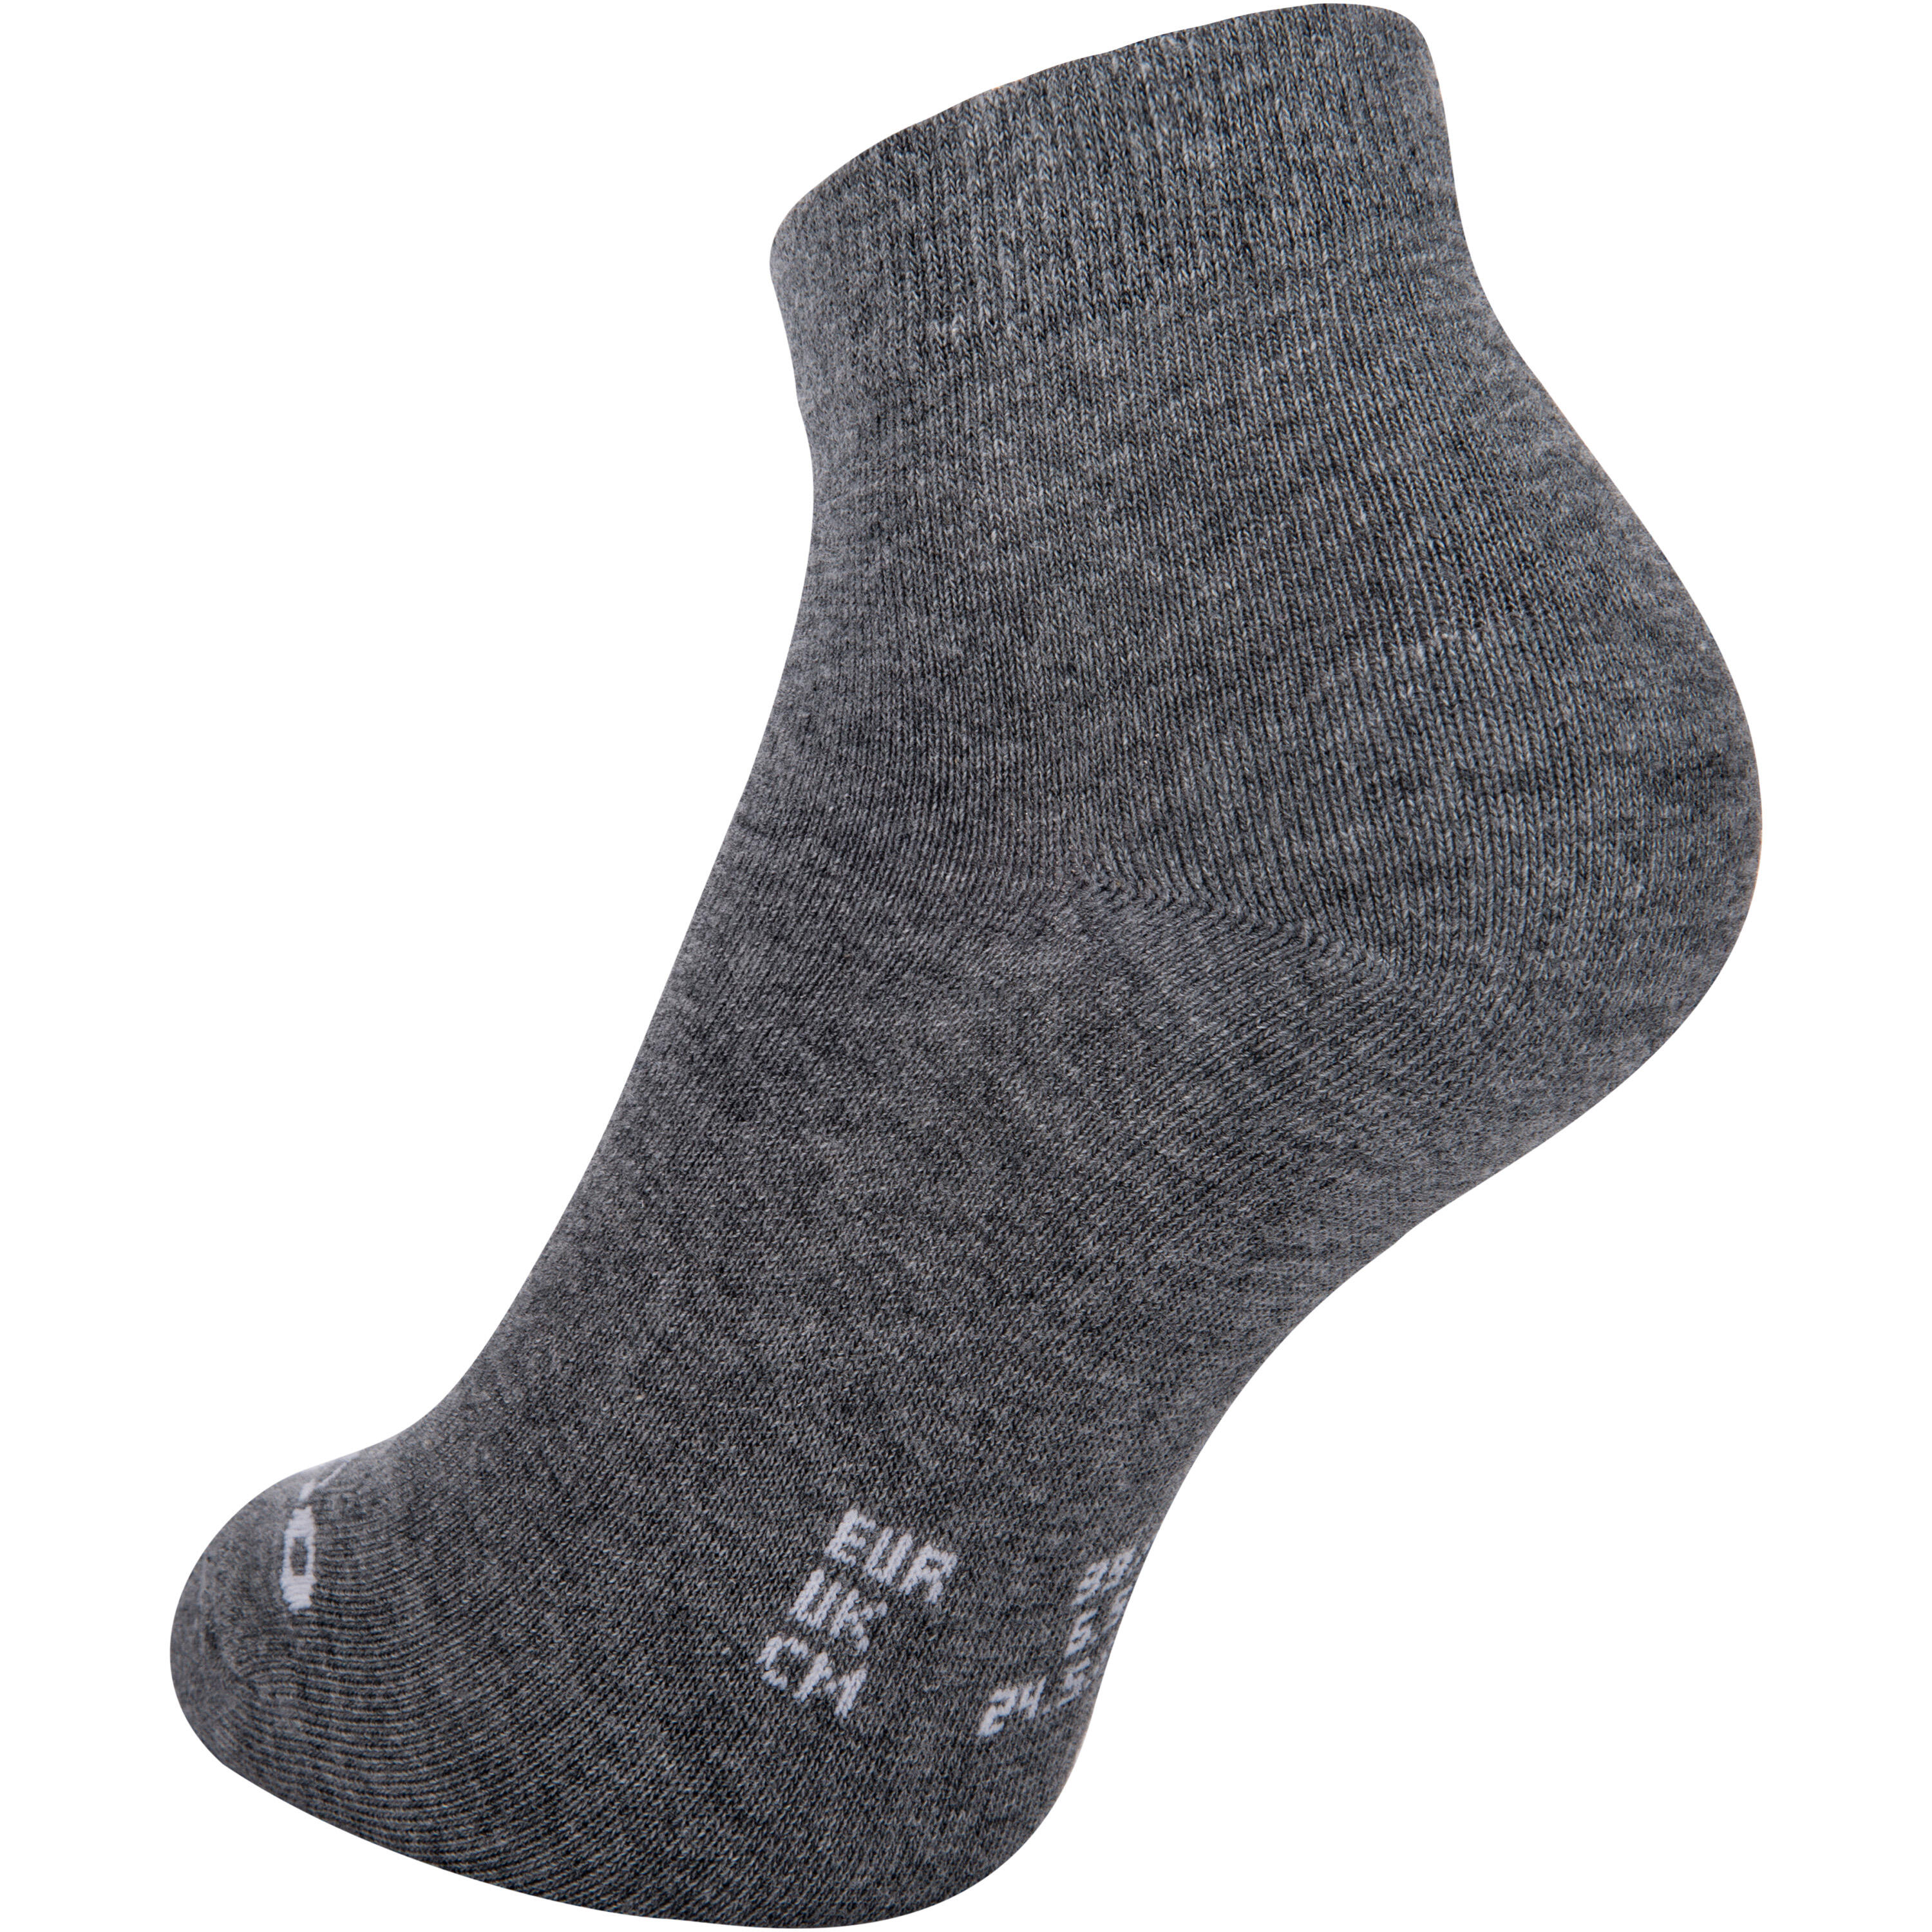 RS 160 Adult Mid Sports Socks Tri-Pack - Dark Grey 6/9